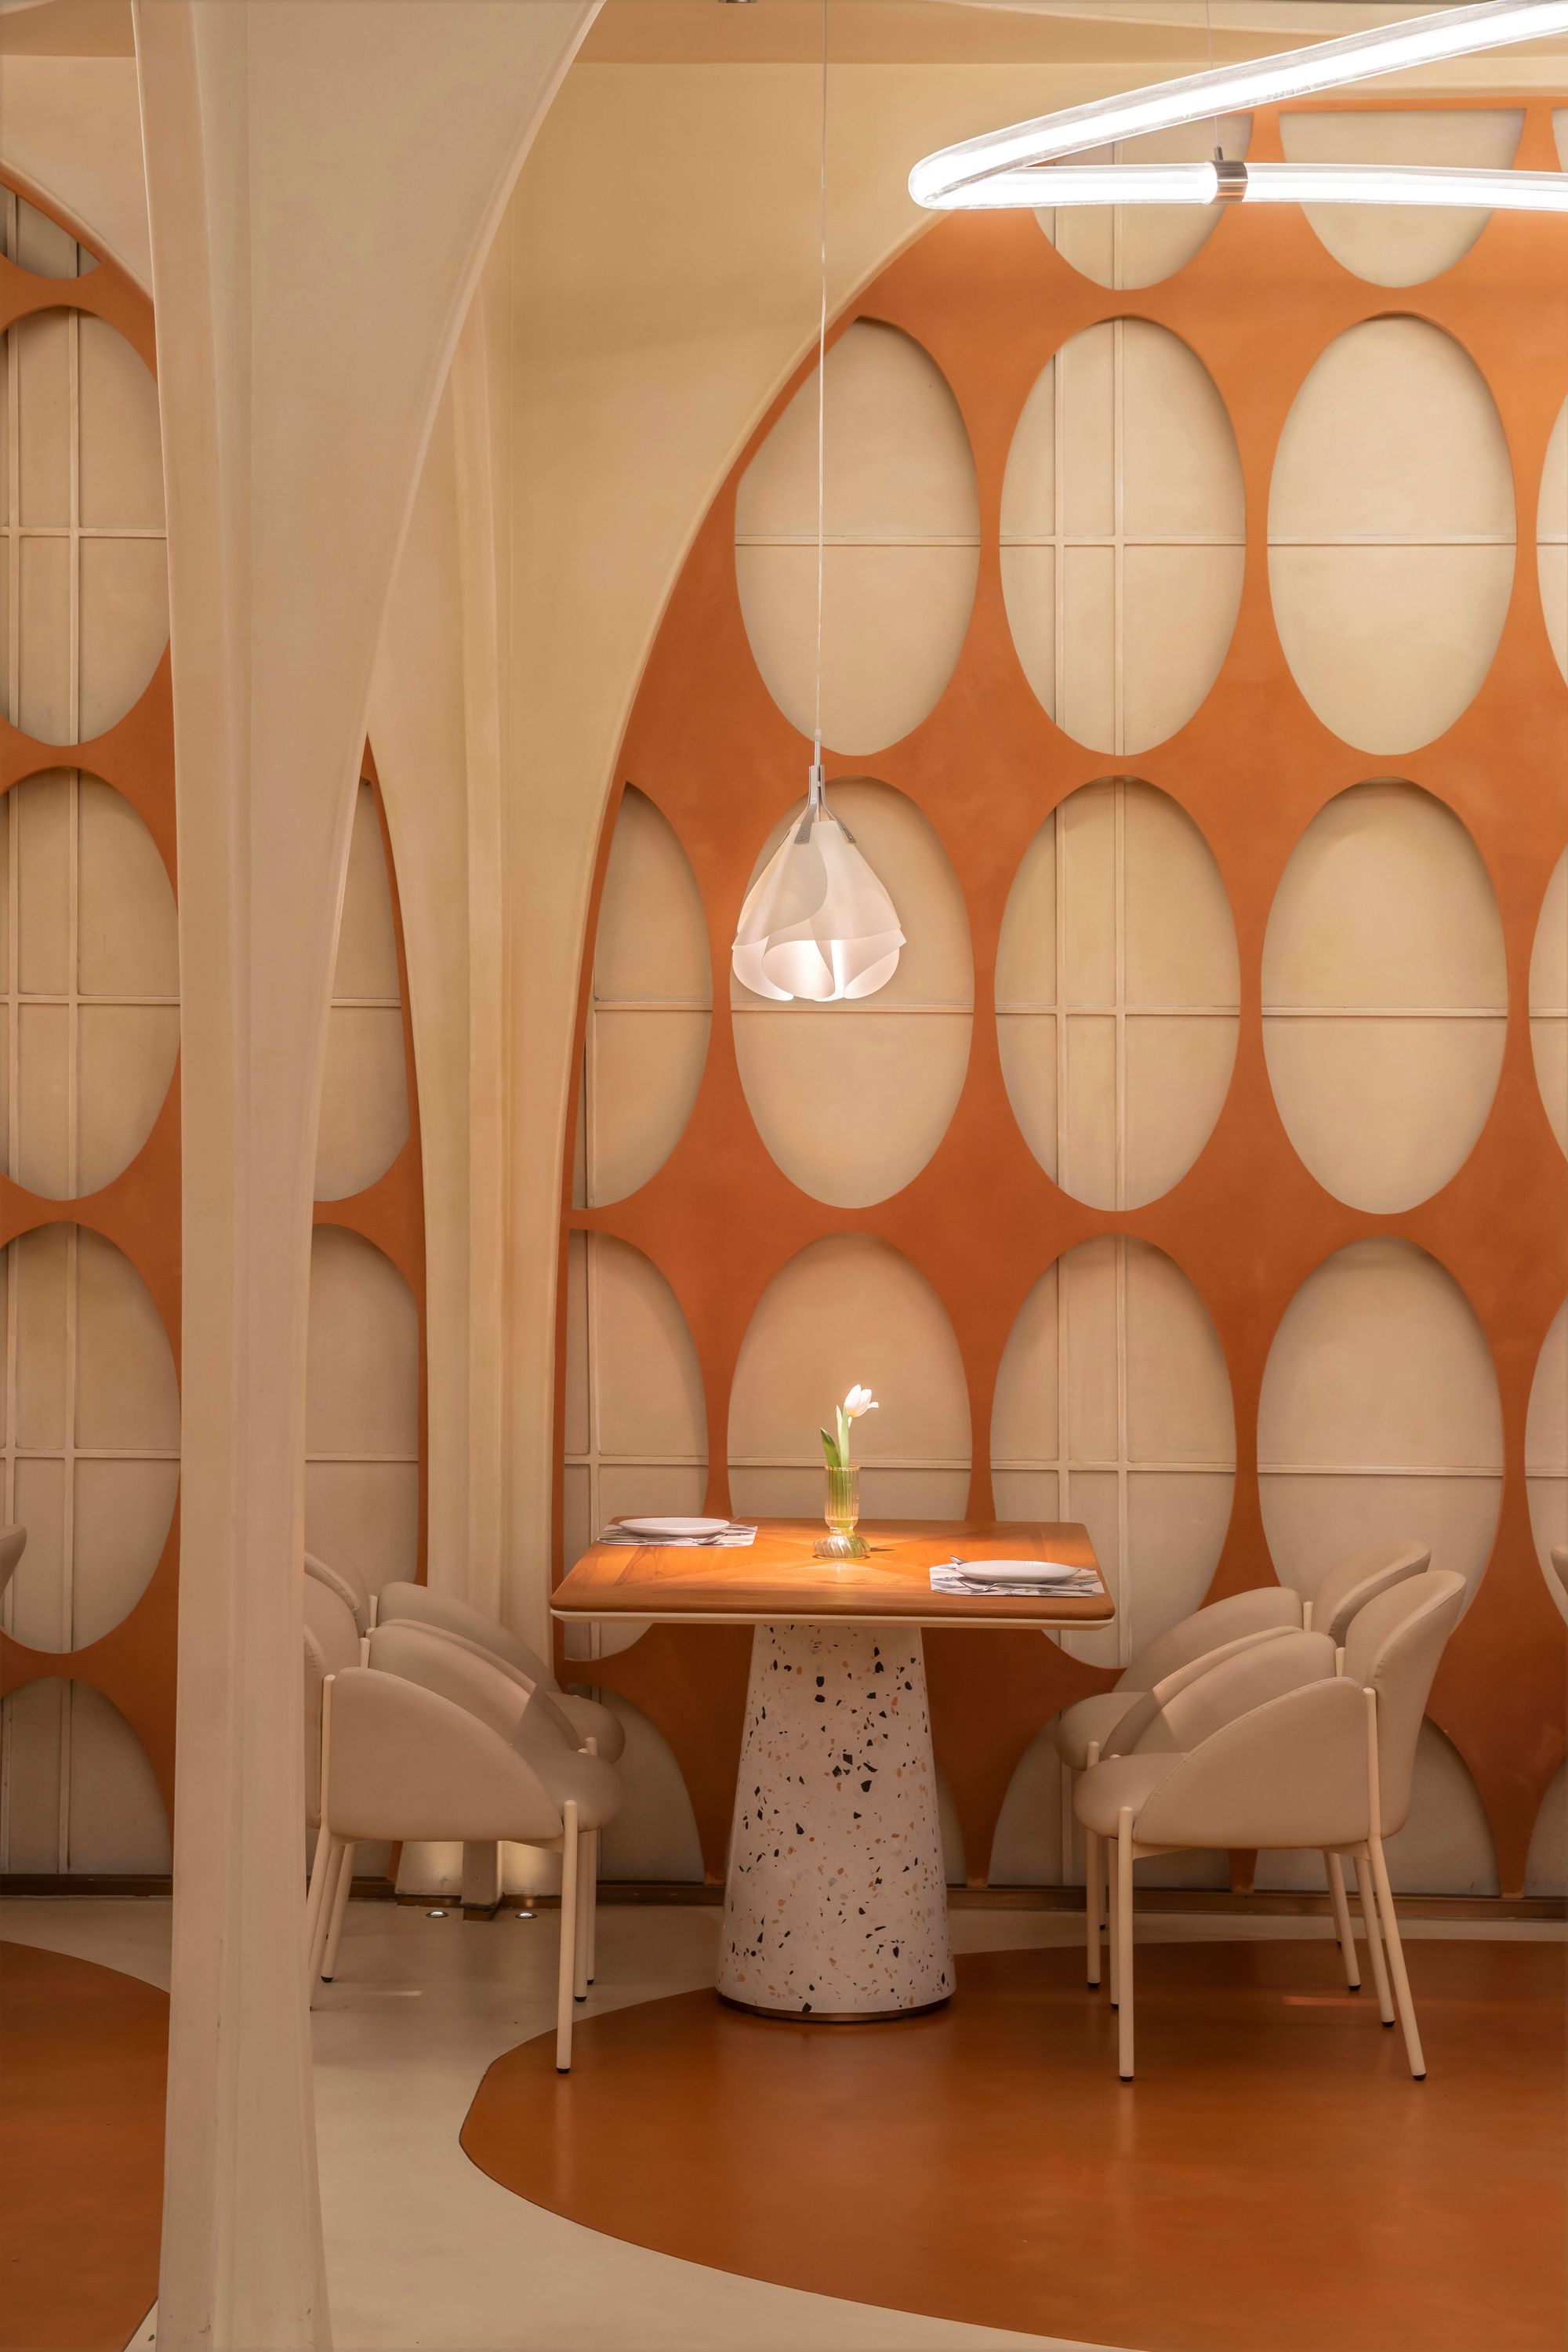 图片[6]|遇见11华阳餐厅|ART-Arrakis | 建筑室内设计的创新与灵感